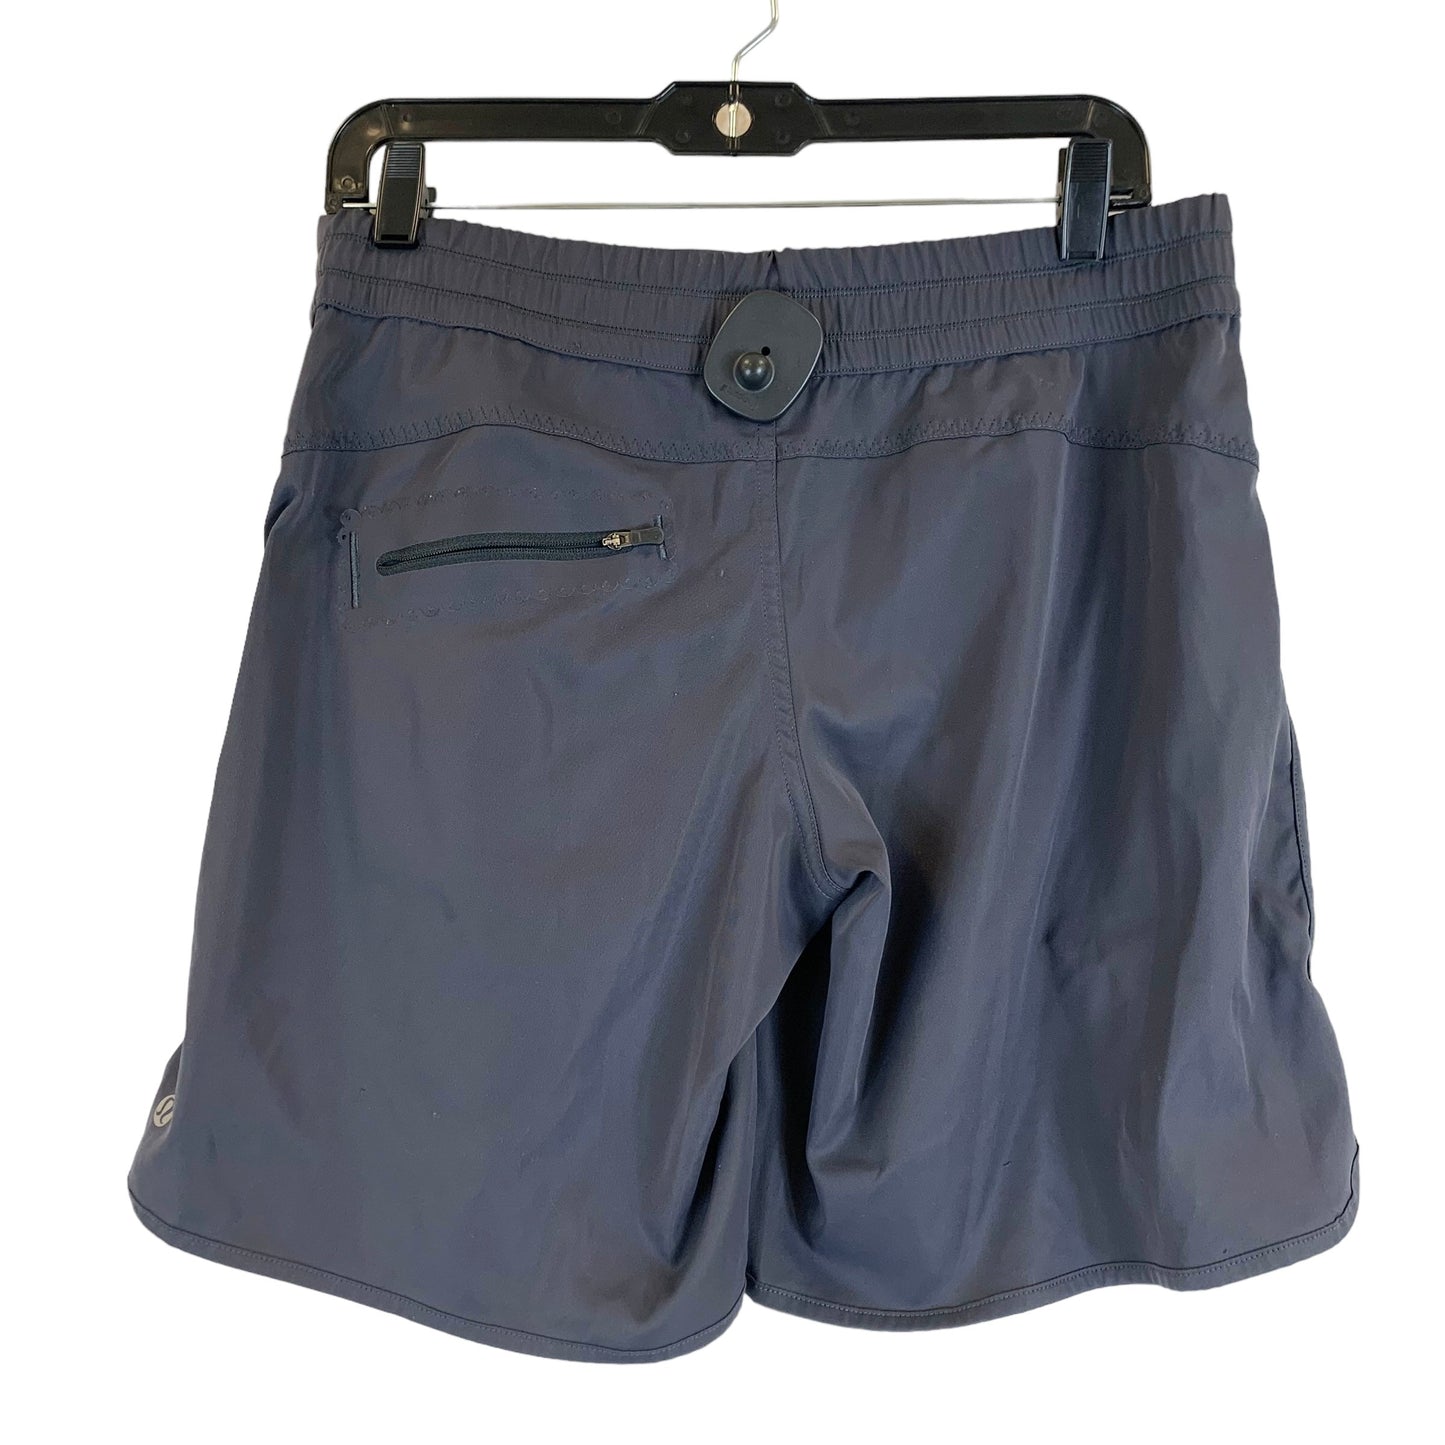 Grey Athletic Shorts Lululemon, Size 10